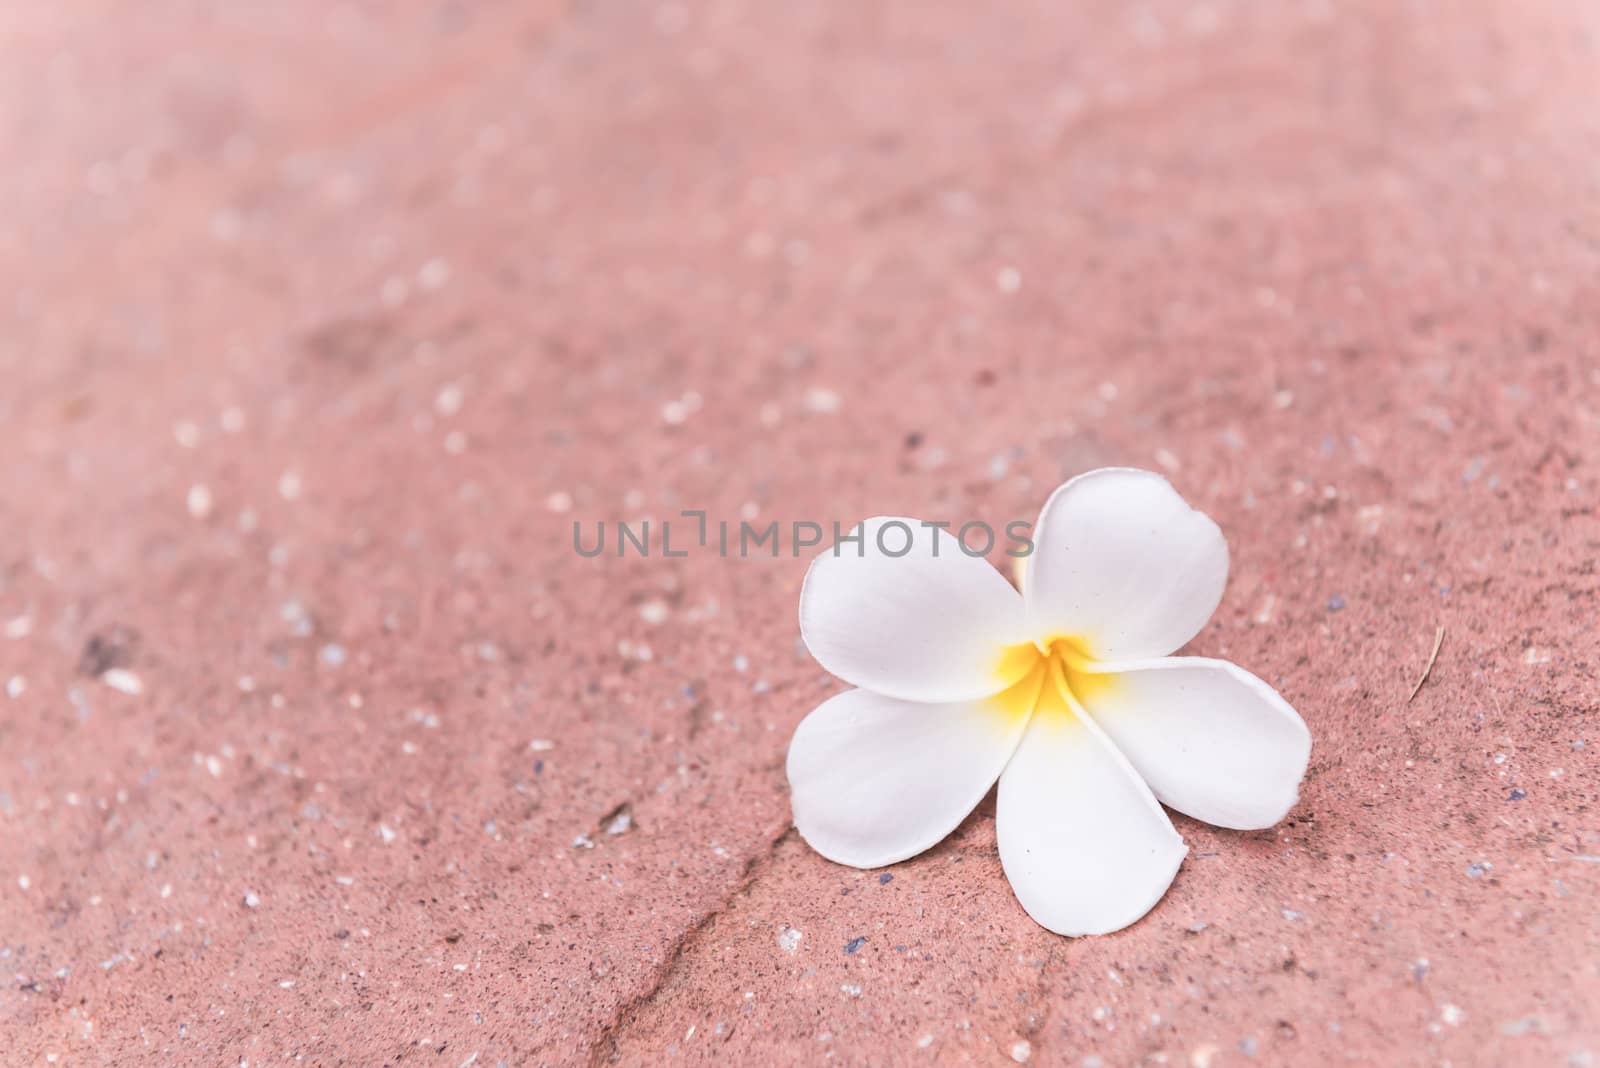 frangipani flowers floating on floor